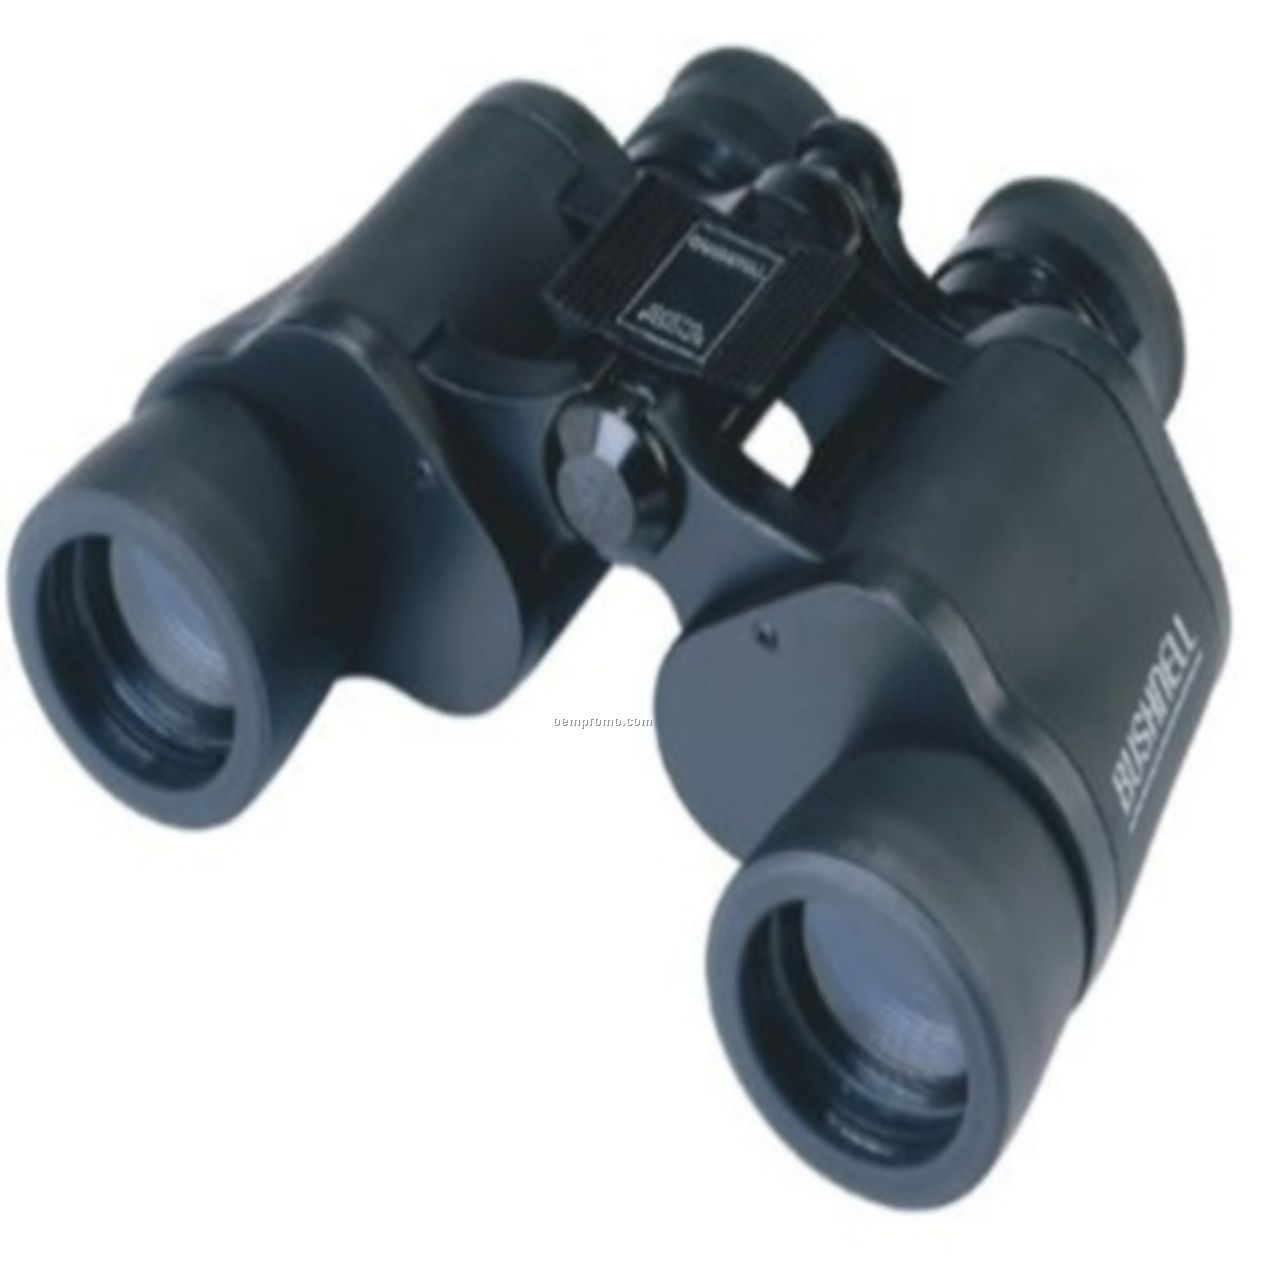 7x35 Wide Angle Binocular W/ Neck Strap